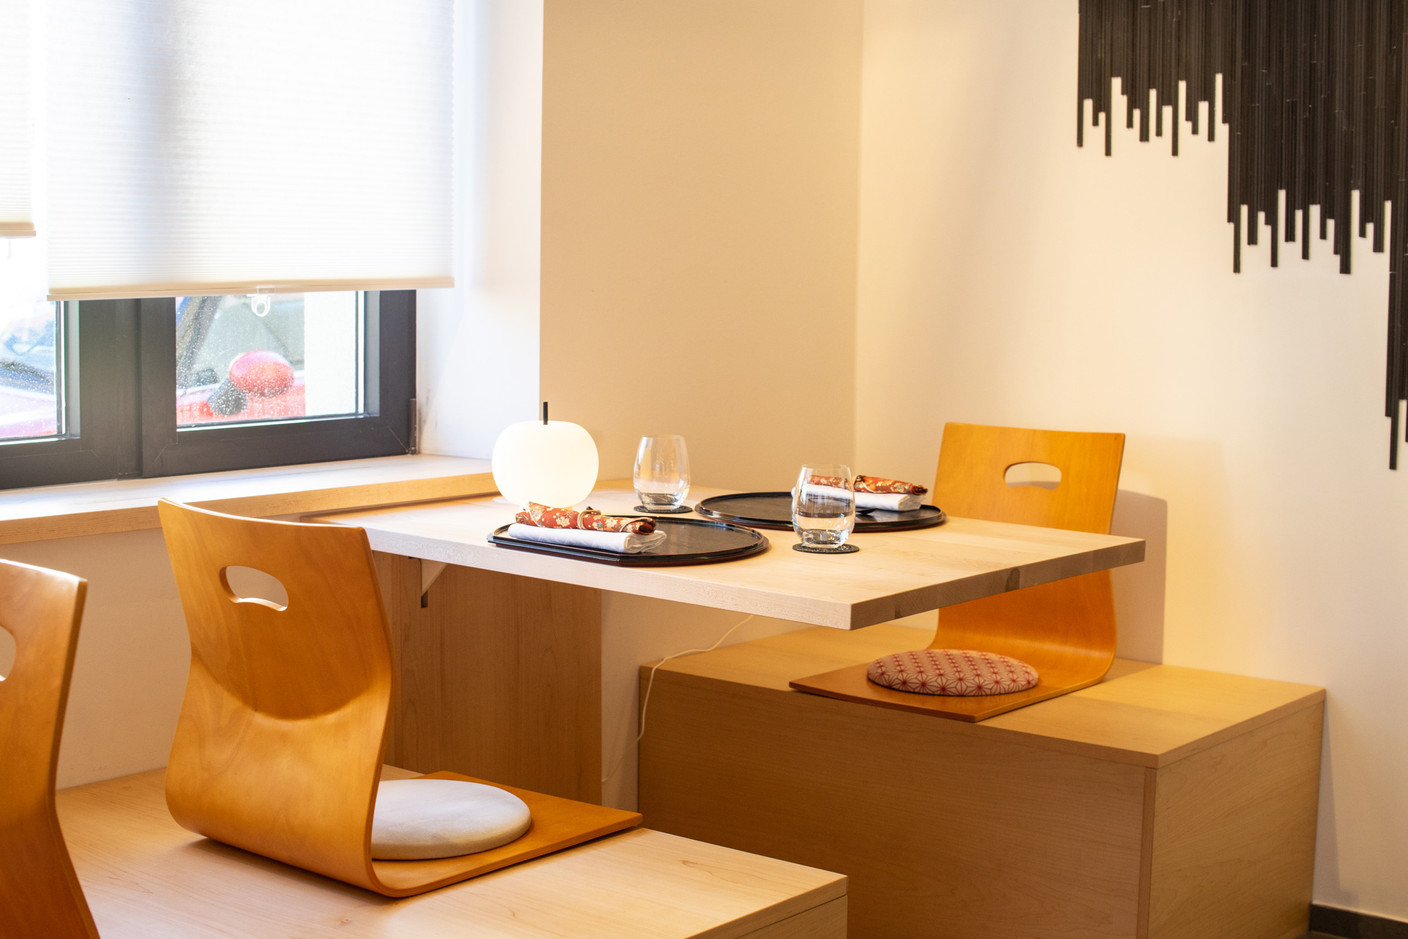 Le décor minimaliste, rappelant les traditions japonaises, donne le ton dès l‘entrée. Maison Moderne